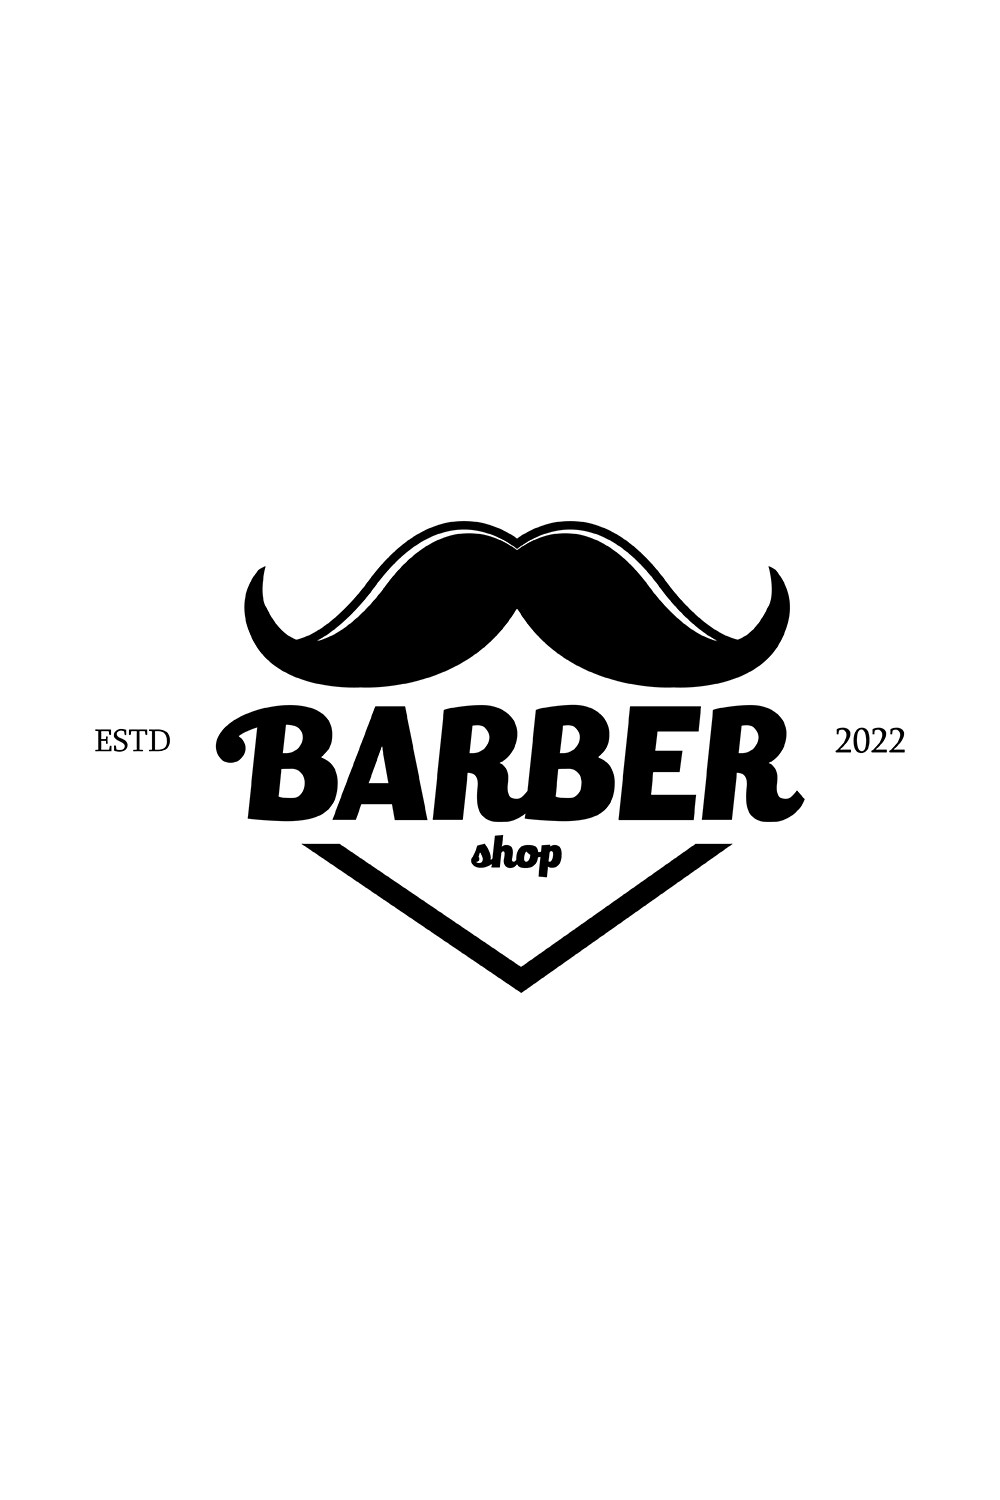 Mustache Barber Logo Design Pinterest image.